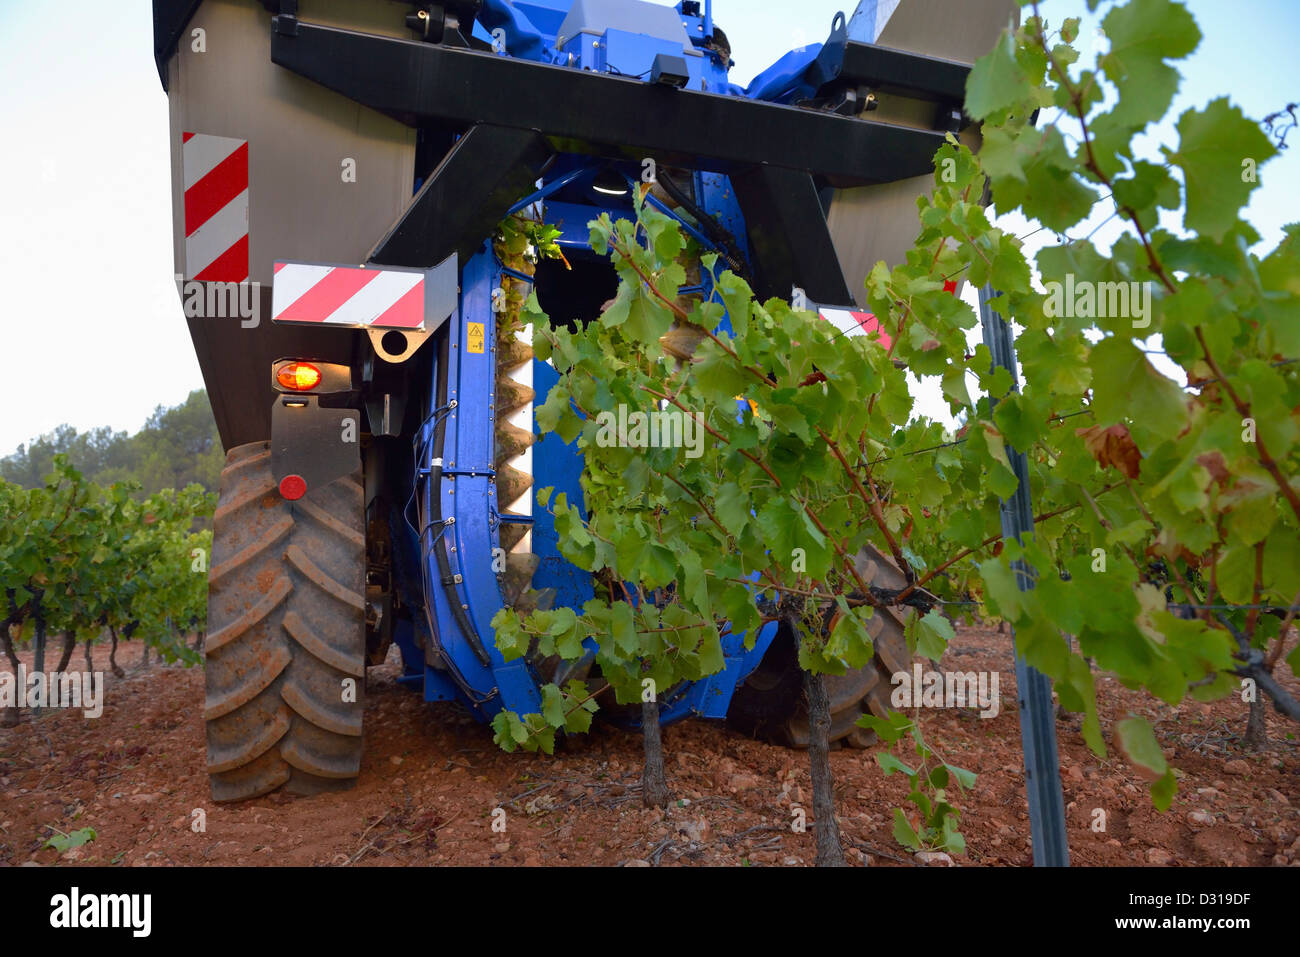 Moissonneuse-batteuse de raisin dans les vignobles de la machine près de la montagne Sainte-Victoire, Trets, région du Rhône, France Banque D'Images